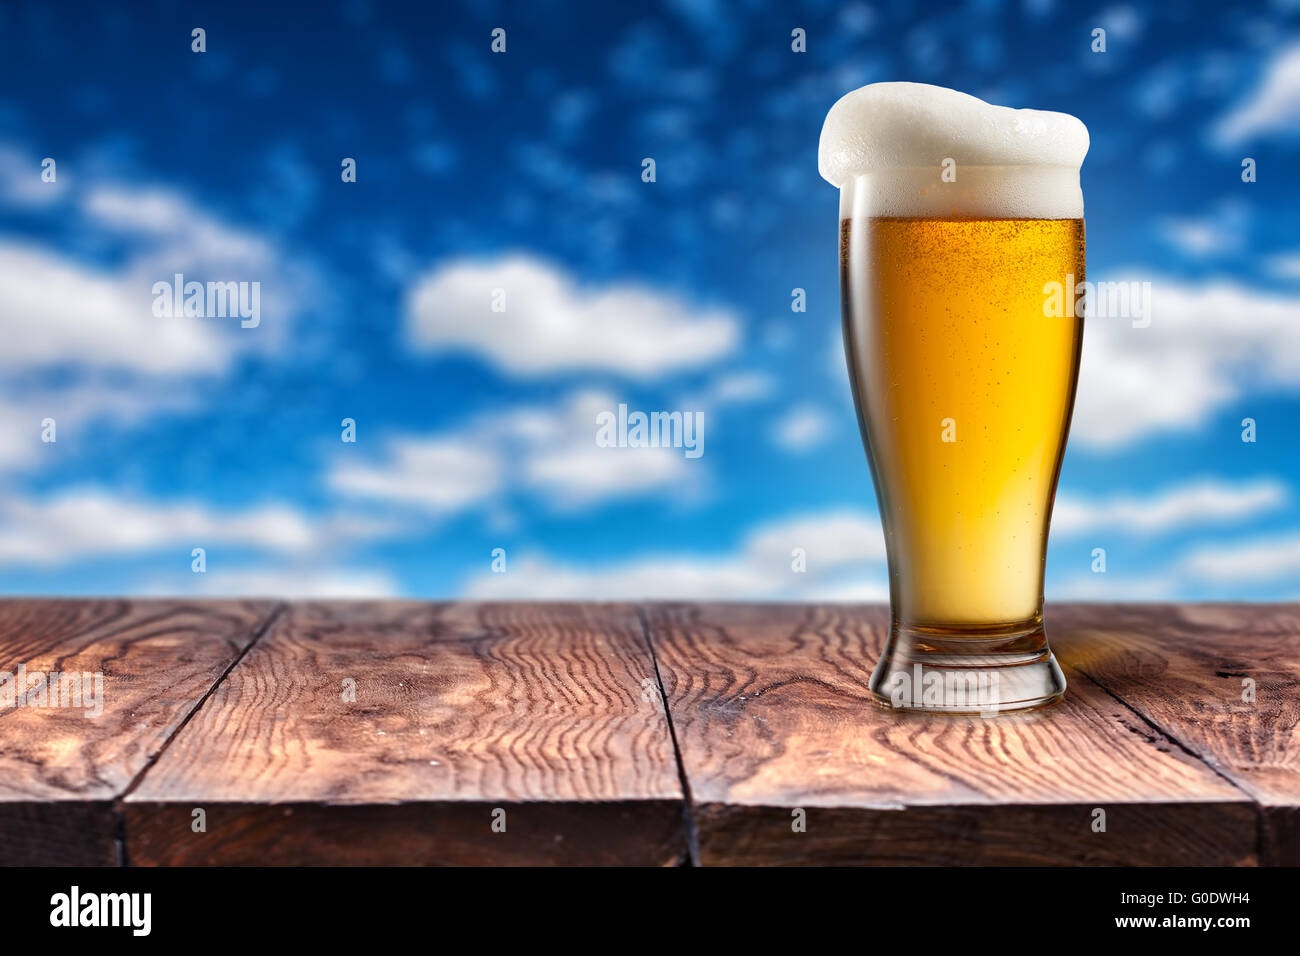 La bière dans le verre sur la table en bois contre le ciel bleu Banque D'Images